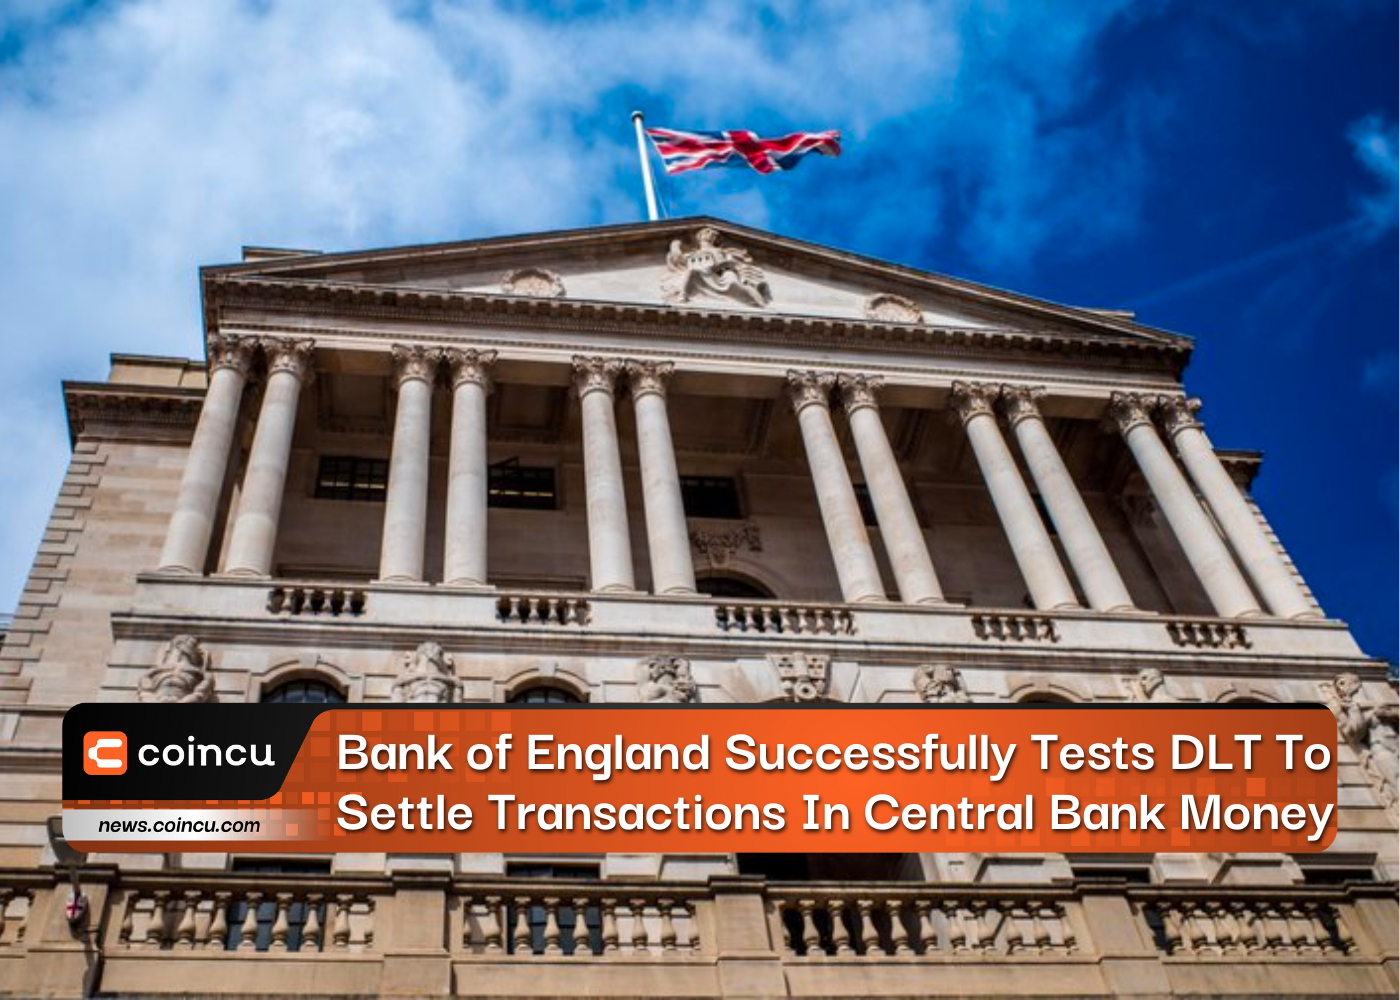 बैंक ऑफ इंग्लैंड ने सेंट्रल बैंक के धन में लेनदेन निपटाने के लिए डीएलटी का सफलतापूर्वक परीक्षण किया